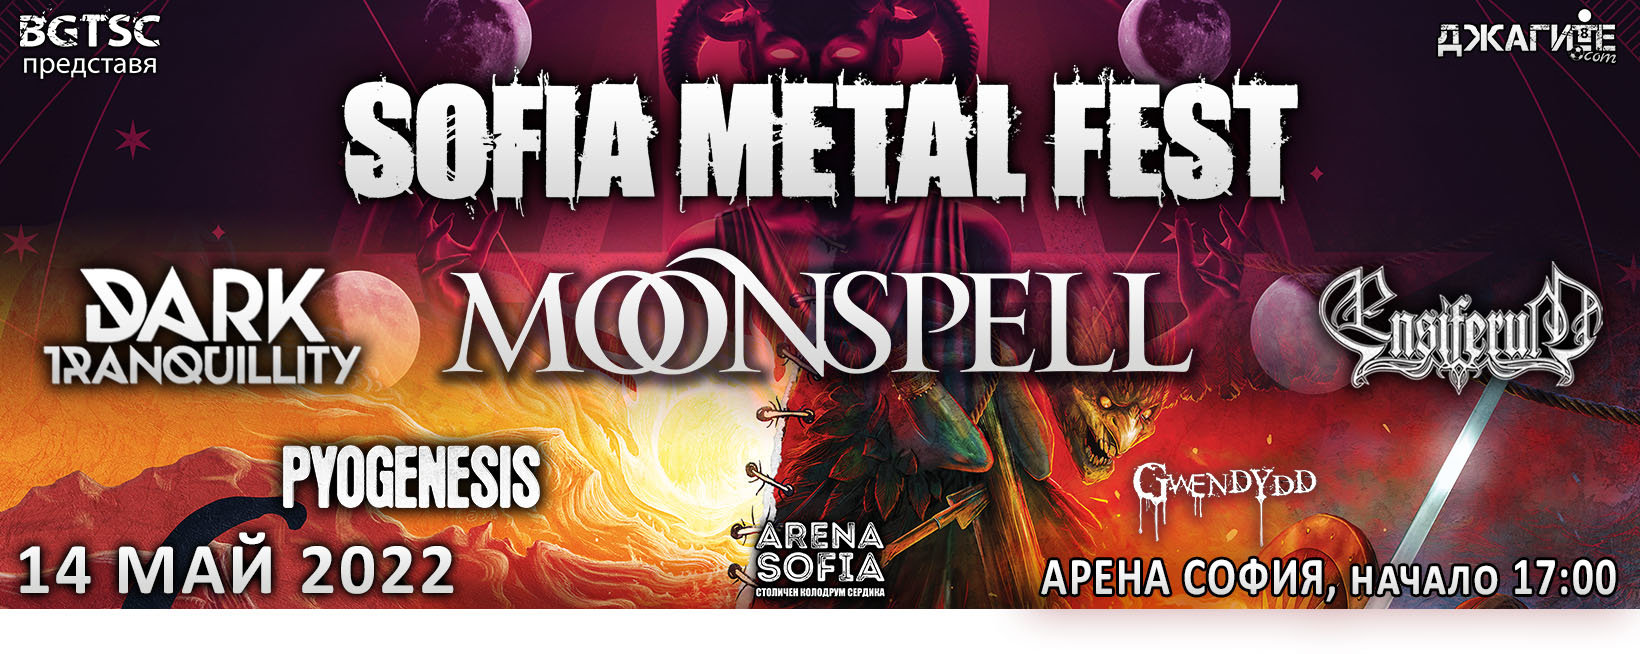 Фестивалът SOFIA METAL FEST, който ще се състои на 14